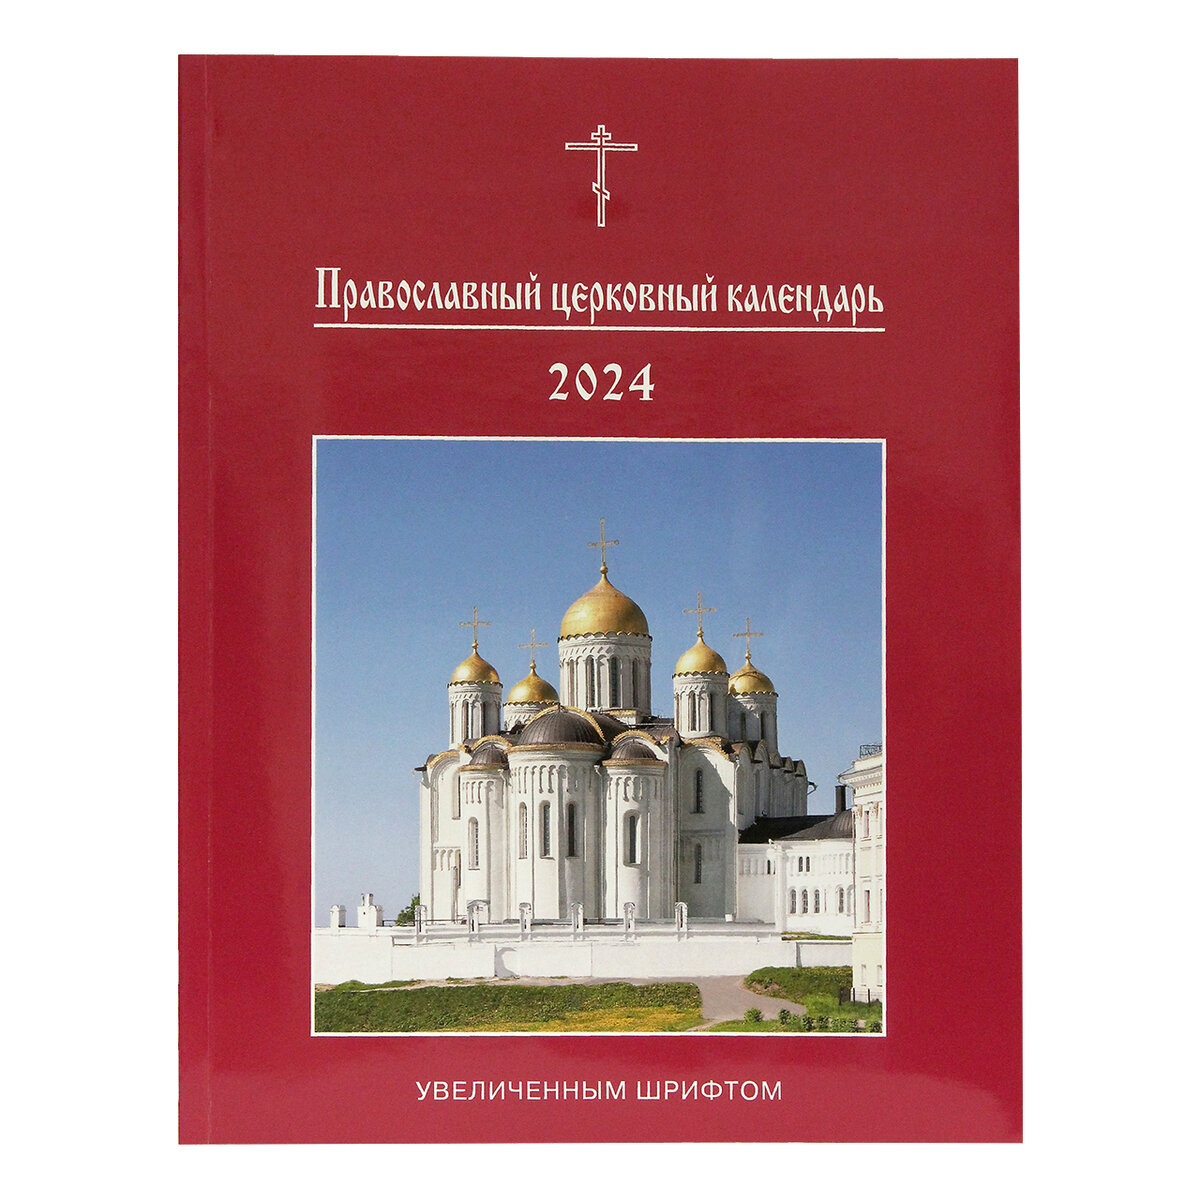 21 апреля 2024 православный календарь. Церковный календарь на 2024 православный. Православный календарь на 2024 год. Православные праздники в 2024. Церковные праздники в 2024 православные.